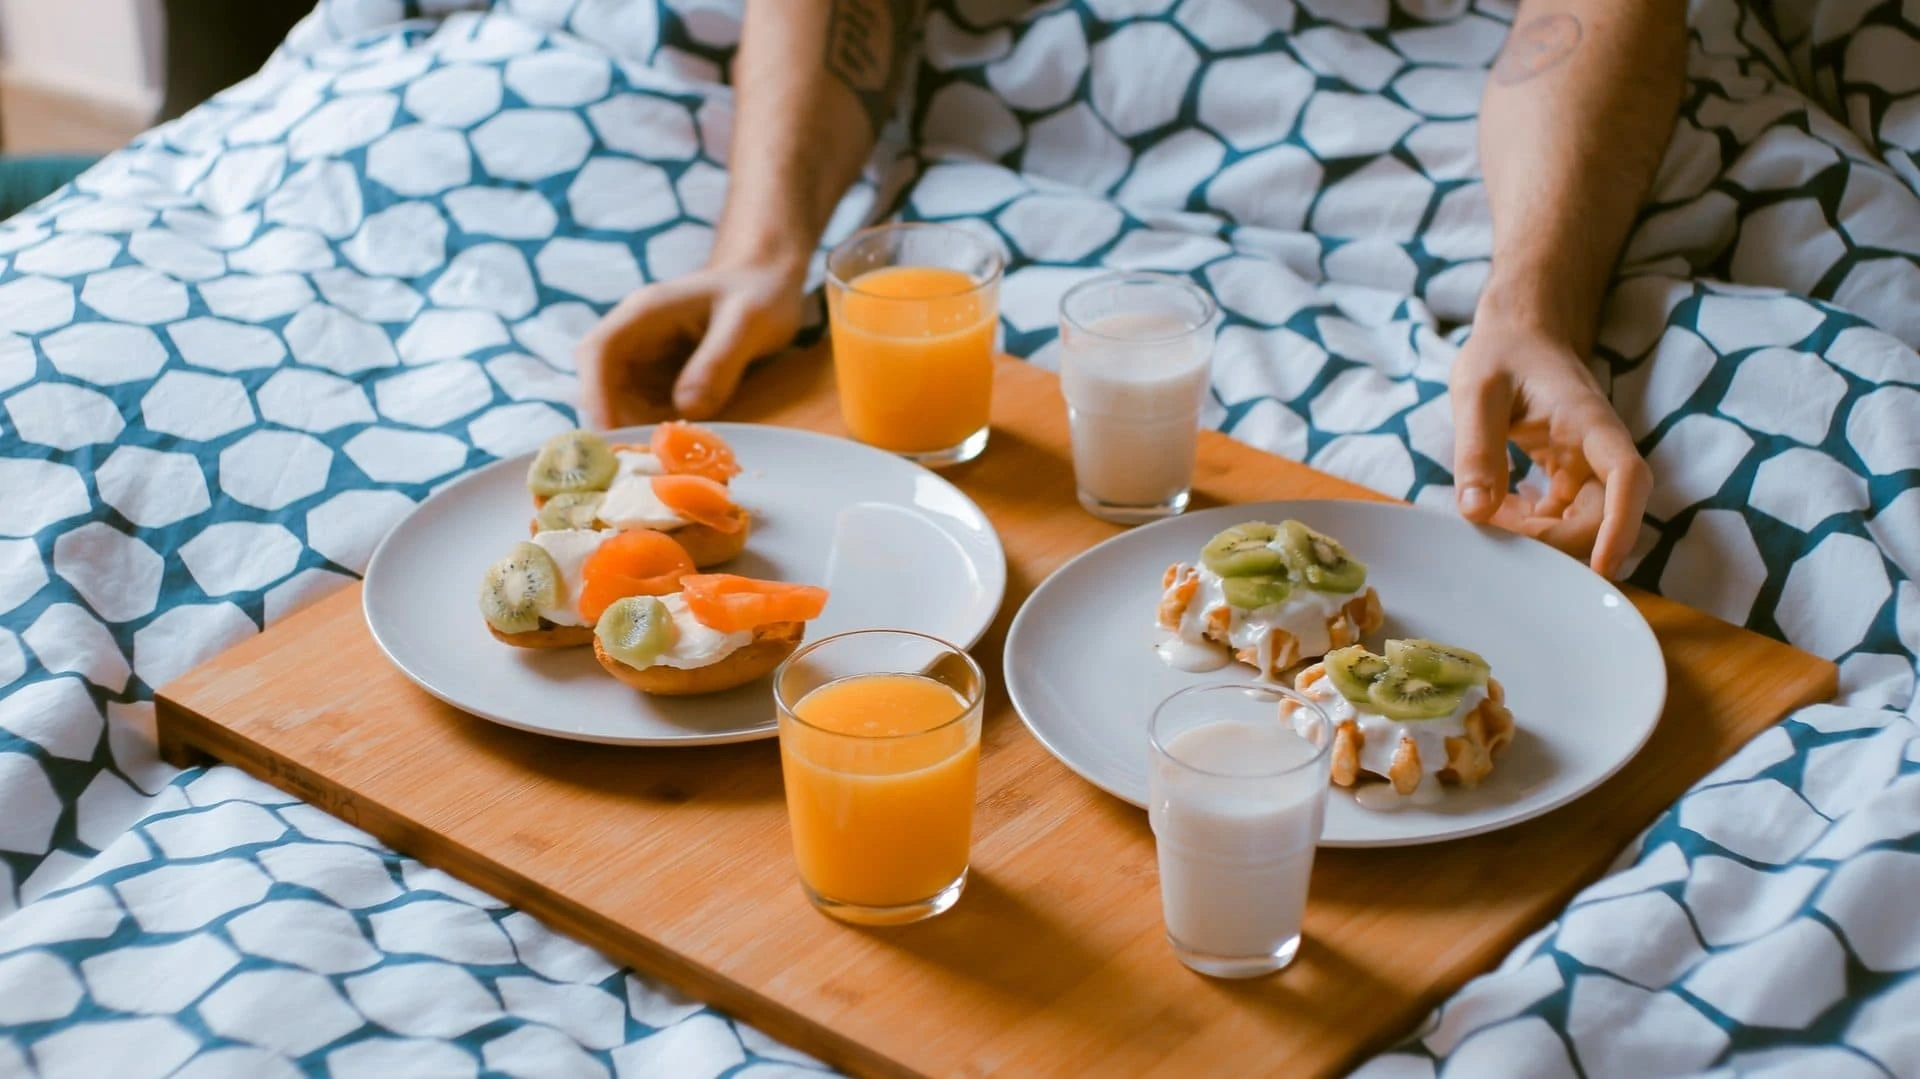 Ontbijt op bed, wafels met kiwi en broodjes met zalm. Vooraanzicht